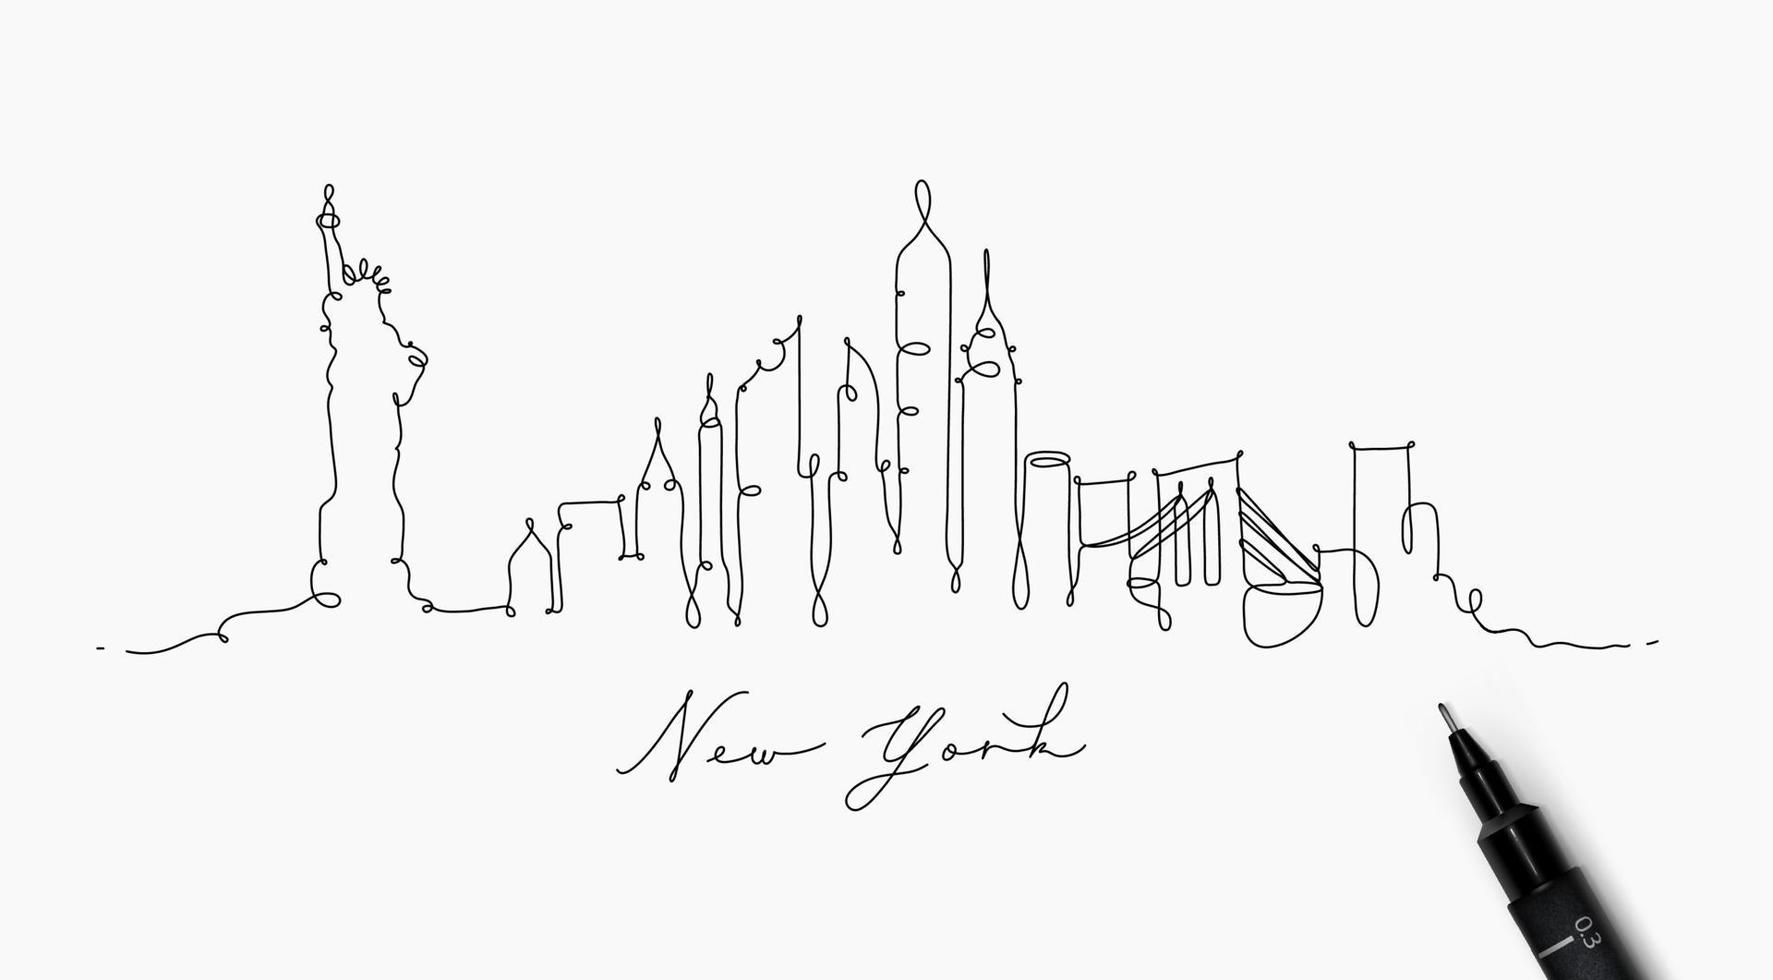 stadtsilhouette new york in stiftlinienstilzeichnung mit schwarzen linien auf weißem hintergrund vektor